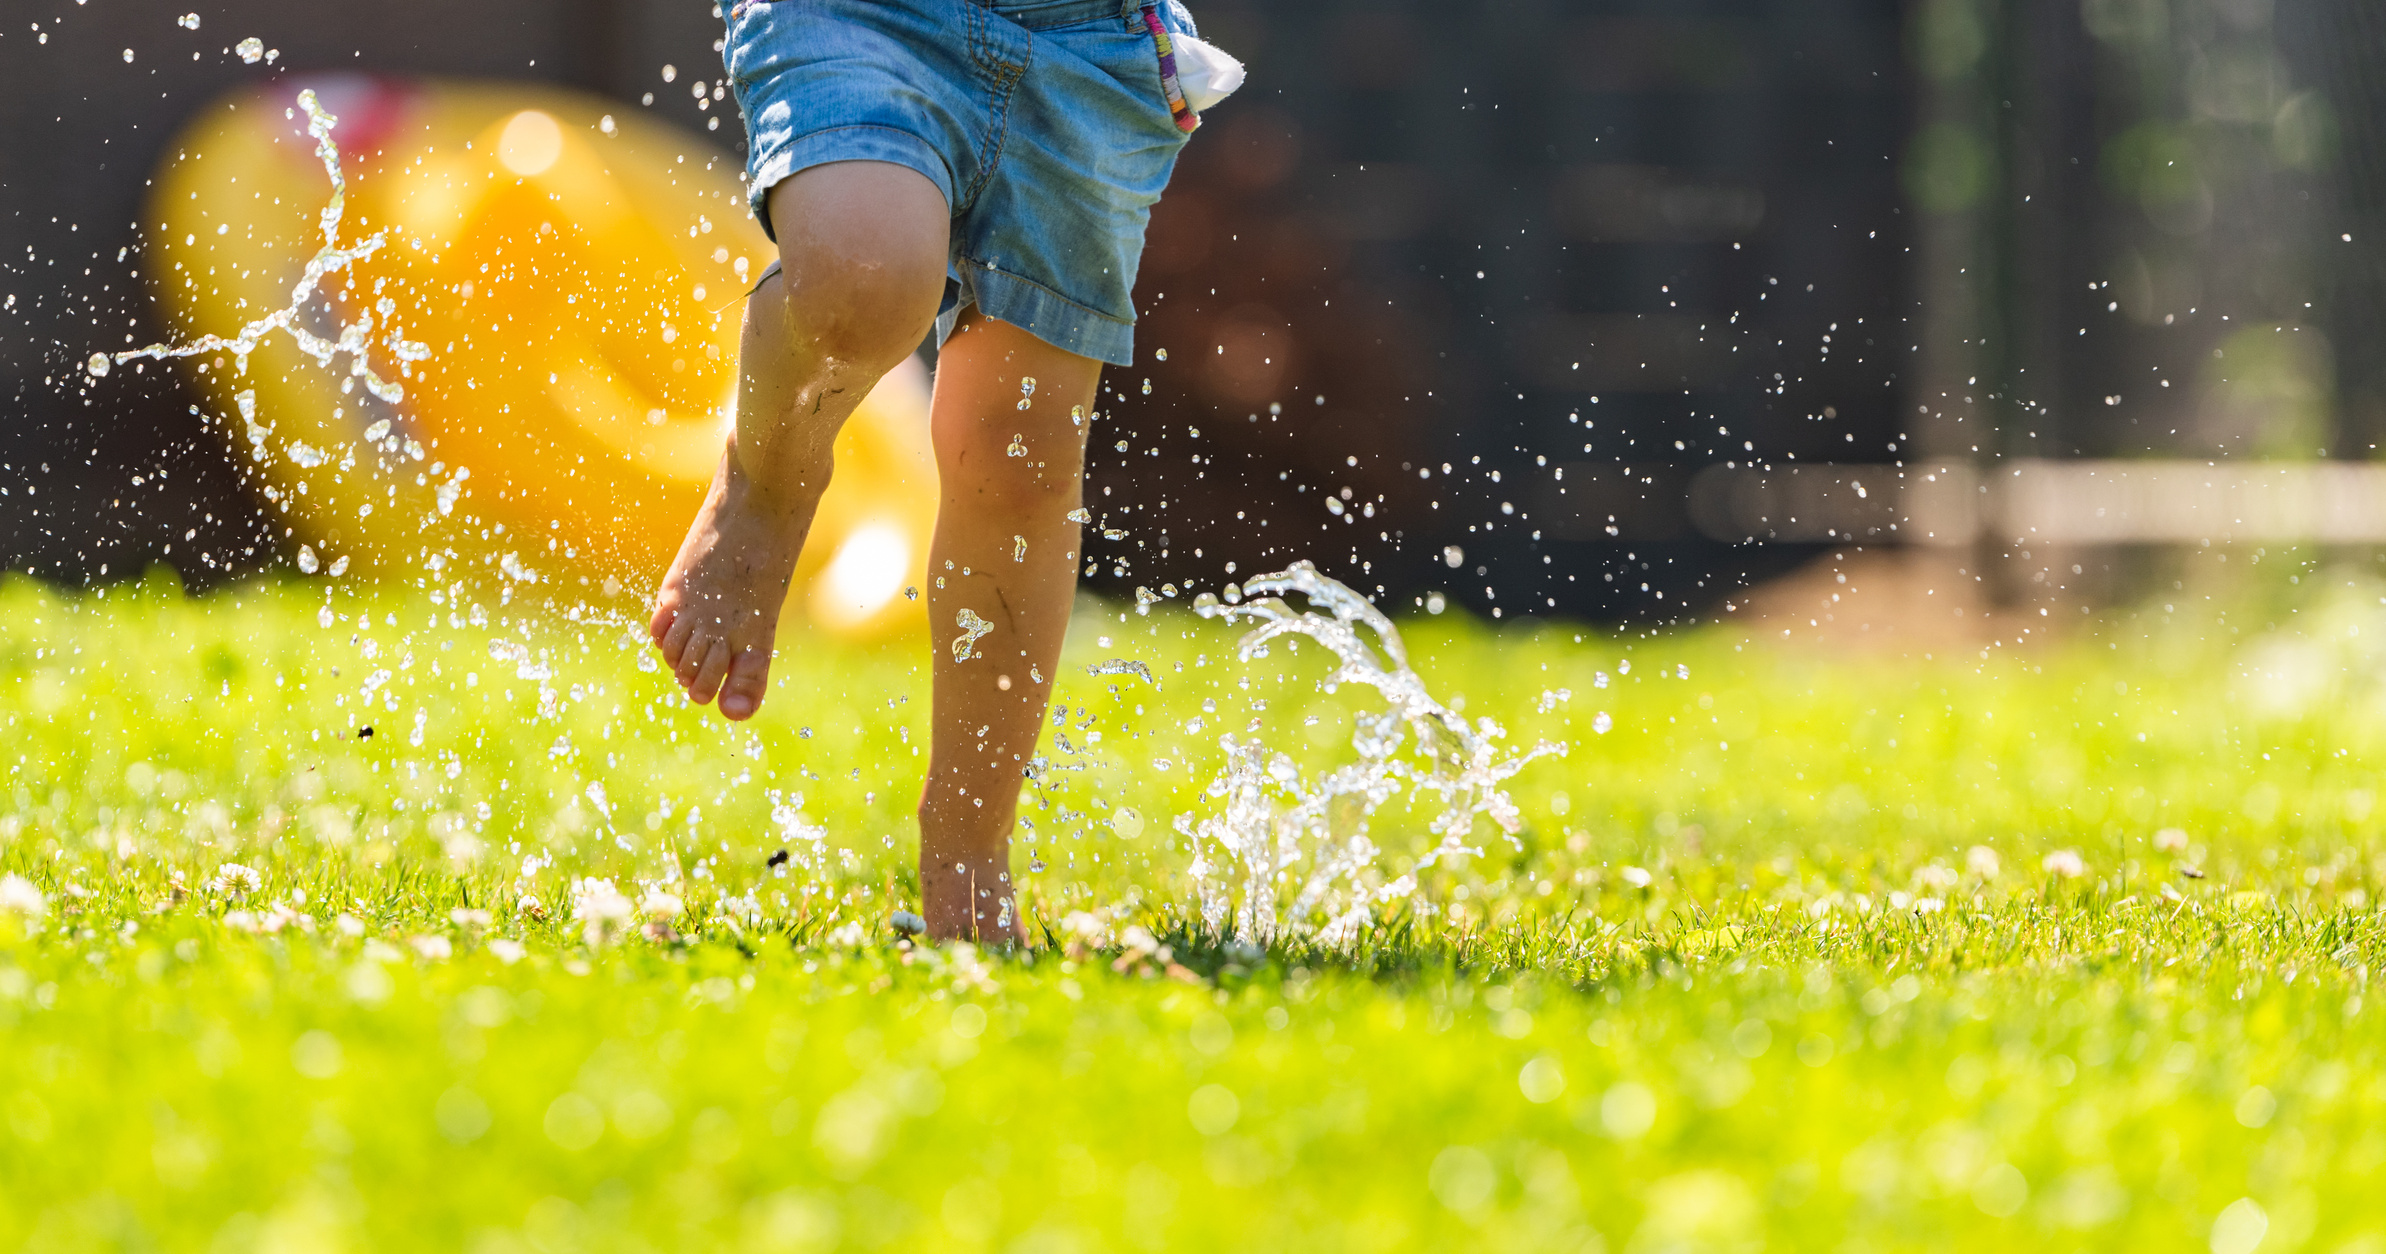 Child Running through Wet Lawn 